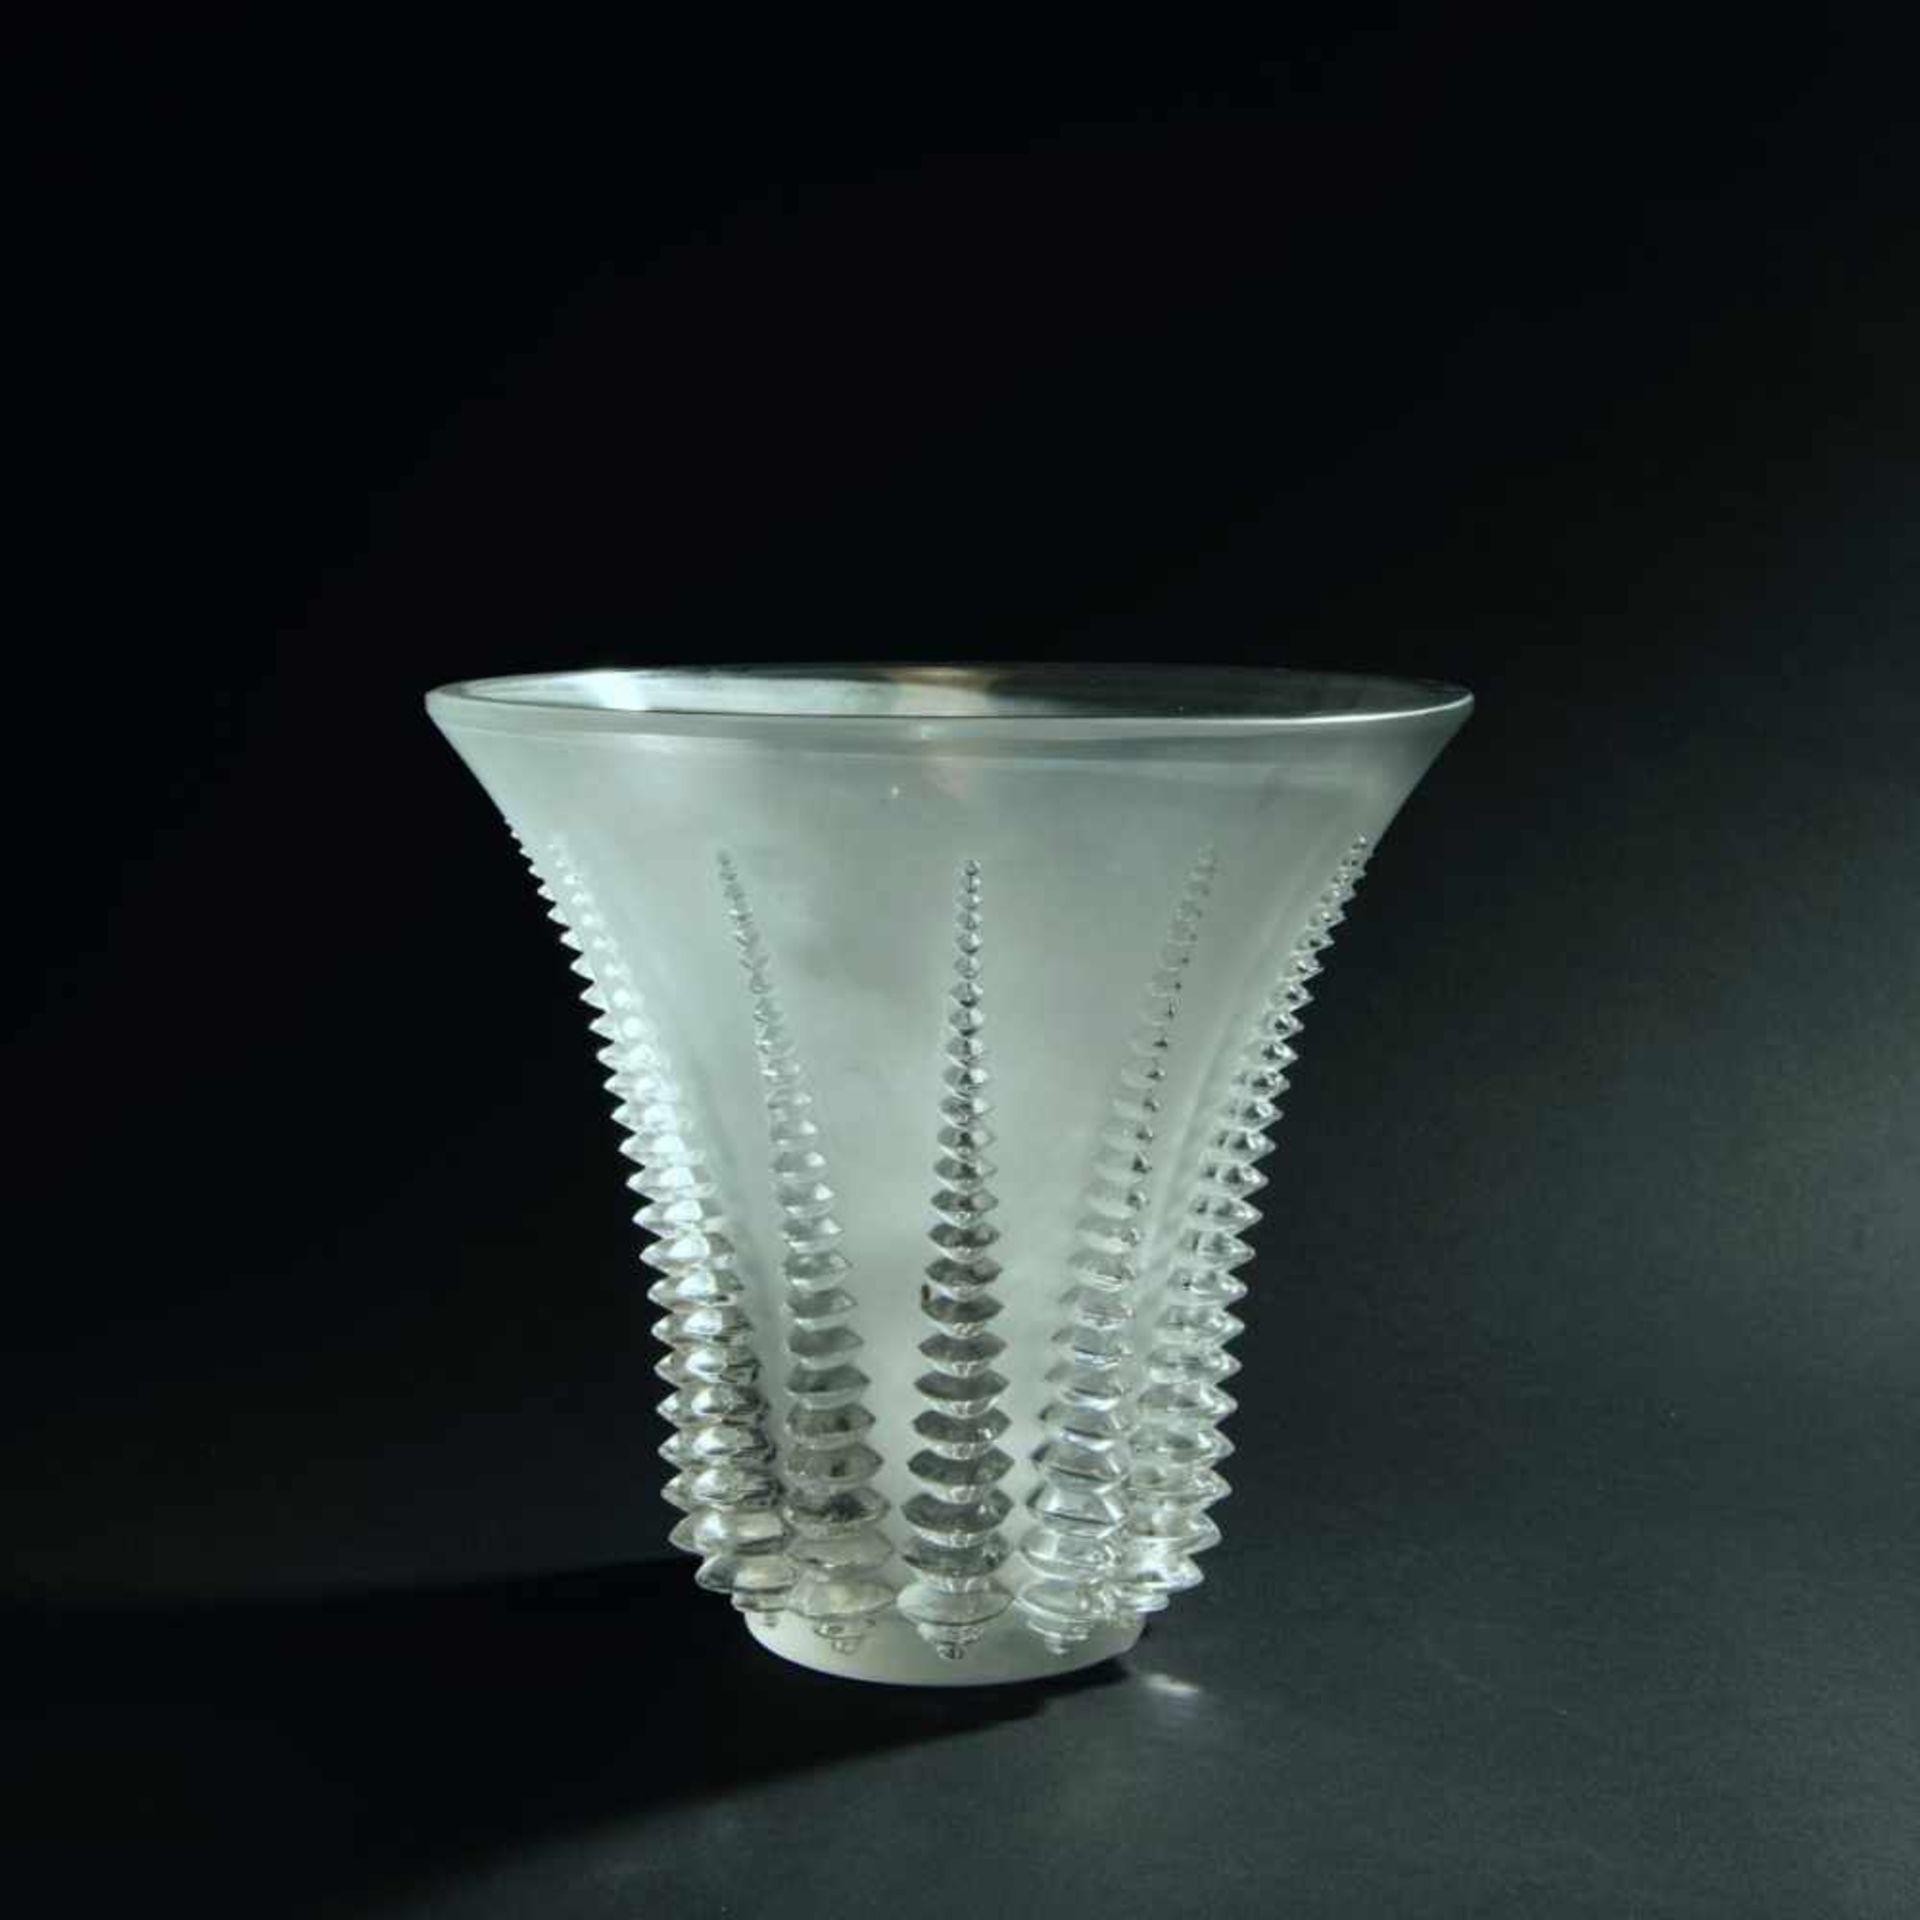 René Lalique, 'Font-Romeu' vase, 1936'Font-Romeu' vase, 1936H. 22.3 cm. Clear moulded glass, the